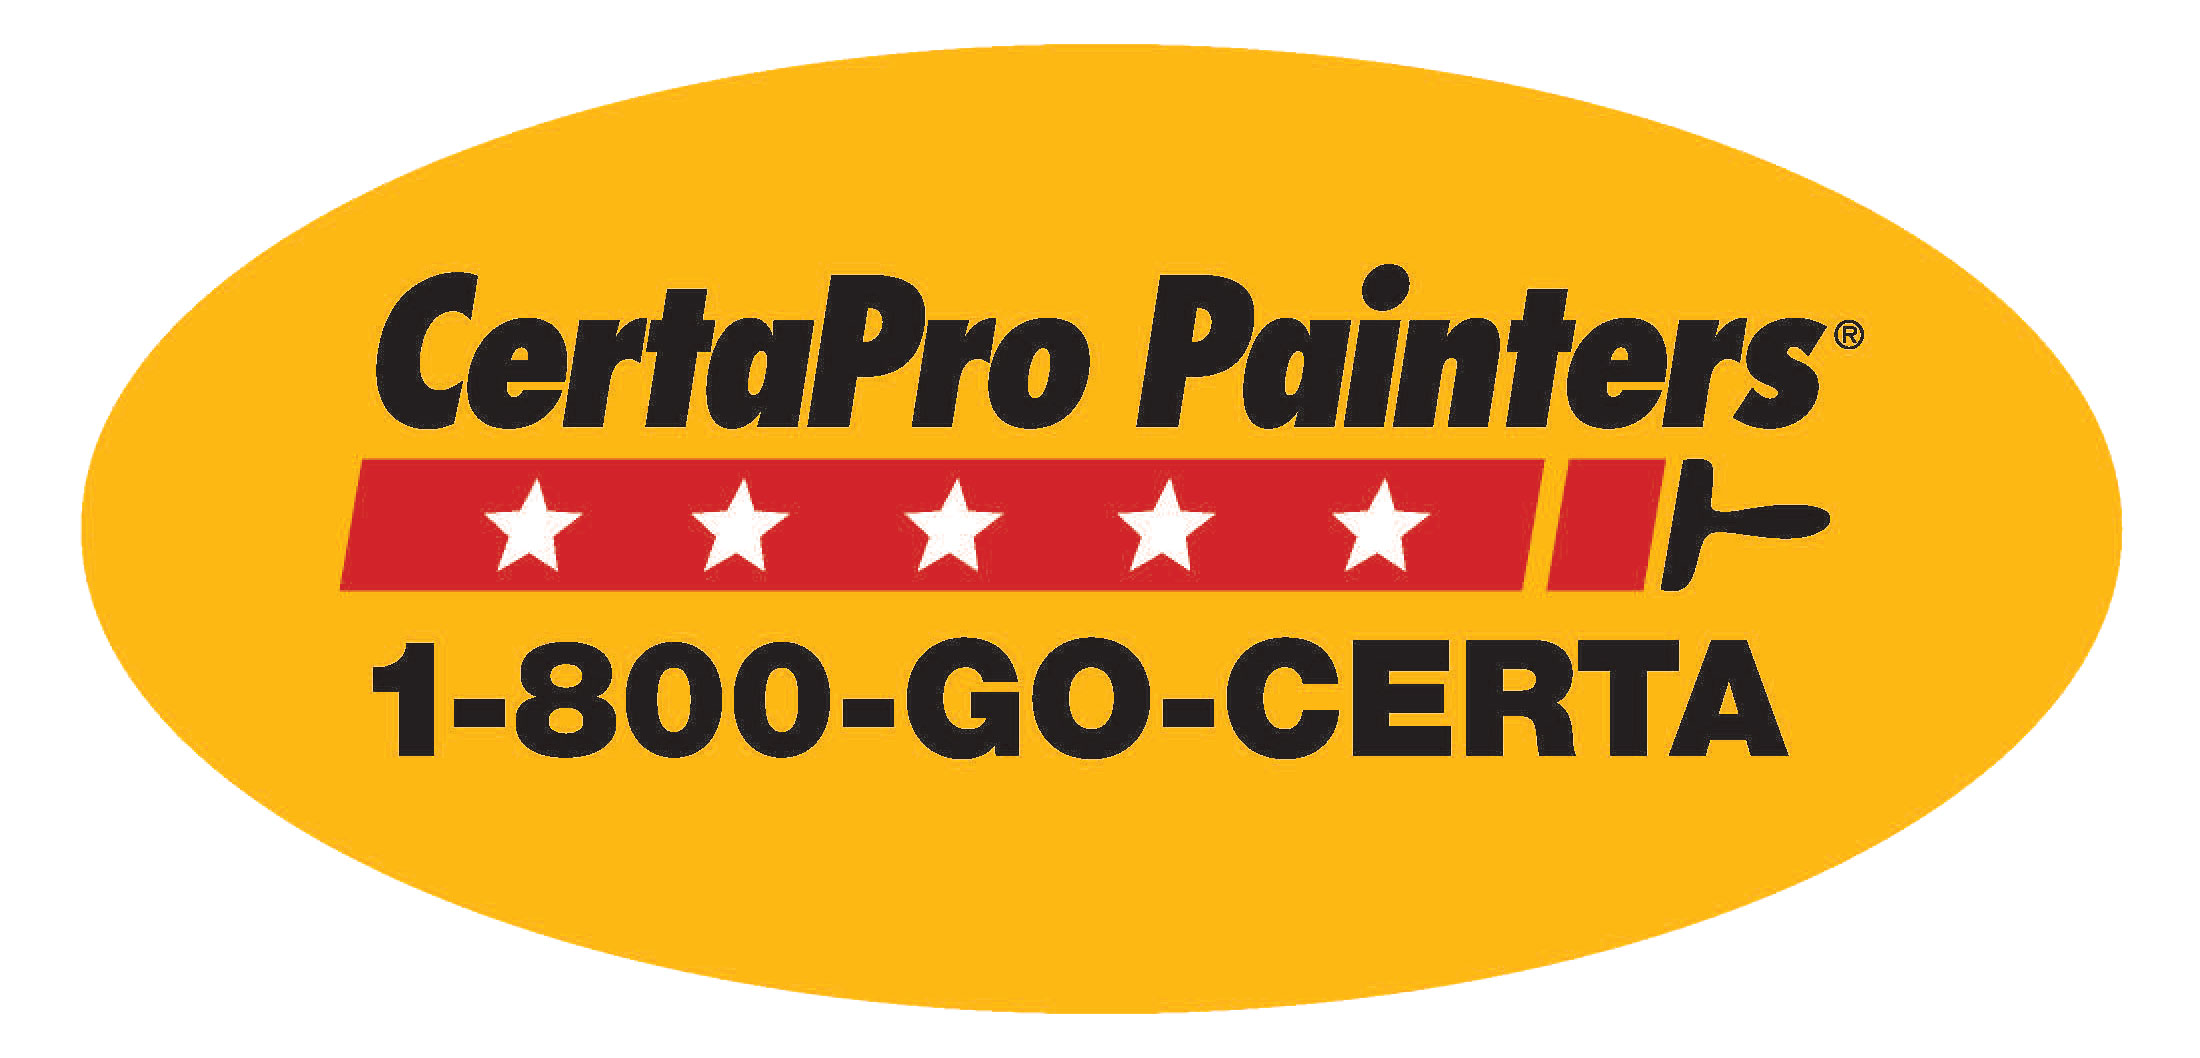 CertaPro Painters Logo